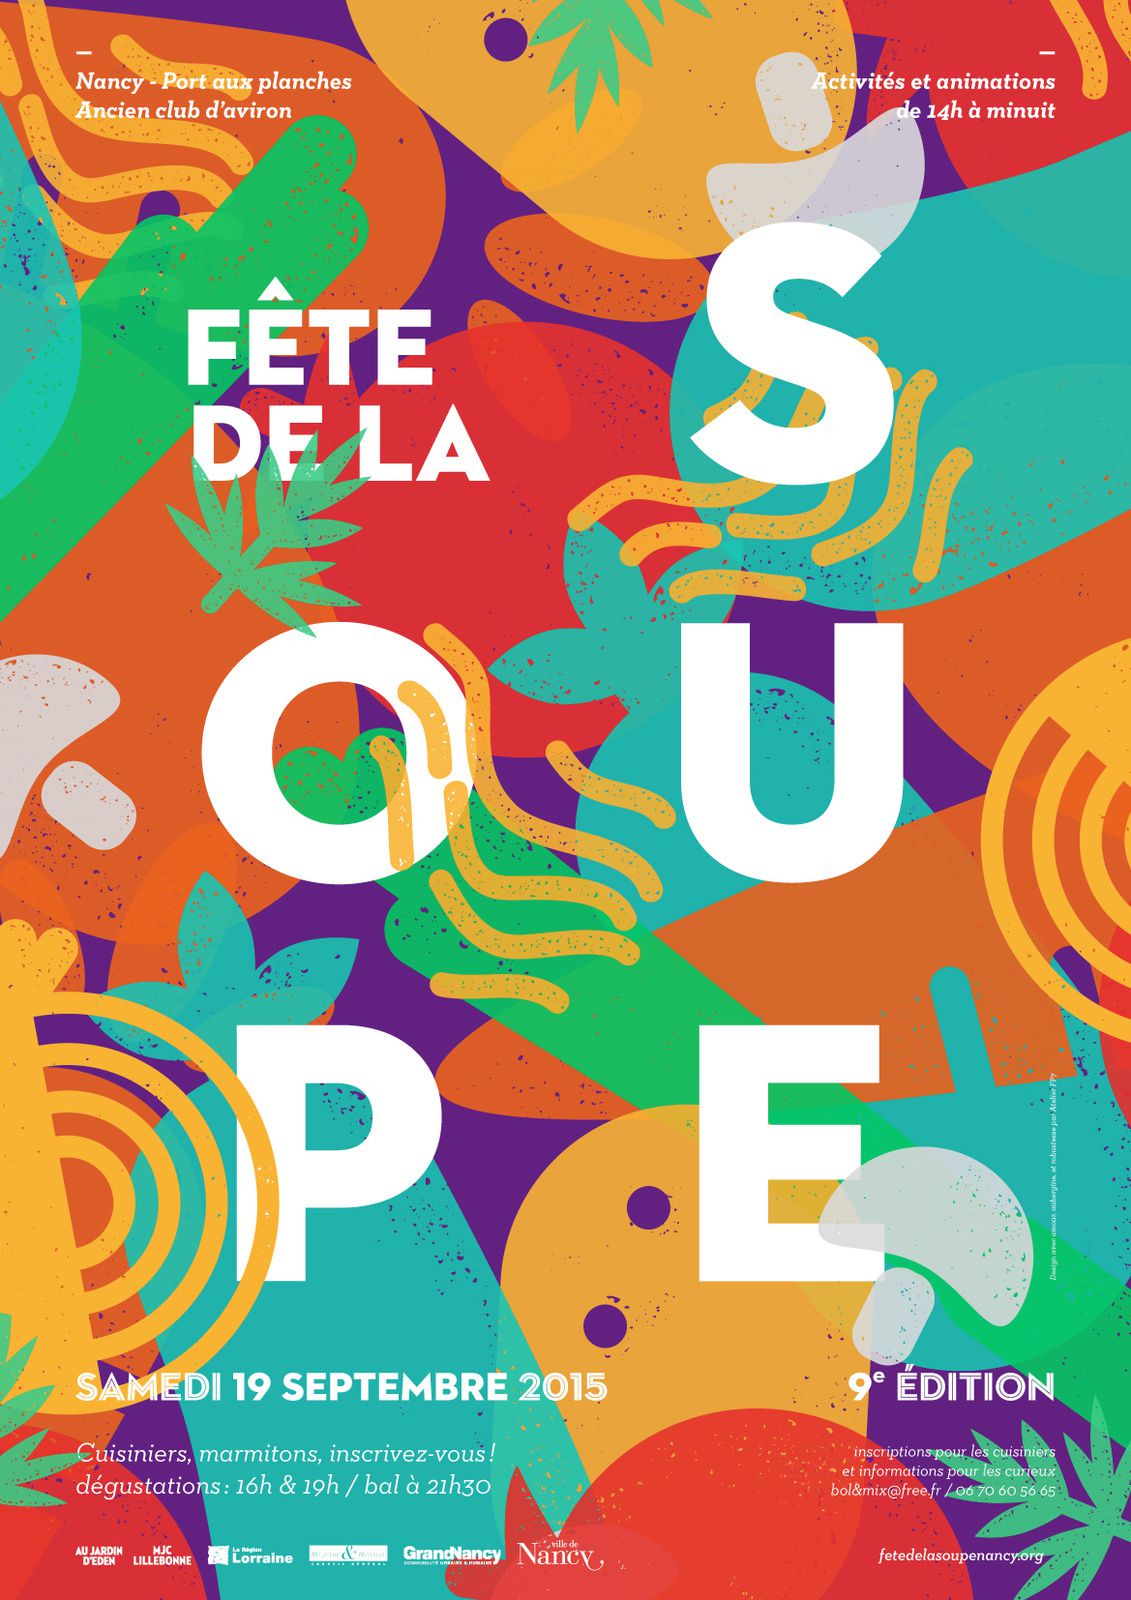 FERMETURE EXCEPTIONNELLE - Samedi 19 Septembre 2015 - PARTICIPATION A LA 9ème FÊTE DE LA SOUPE